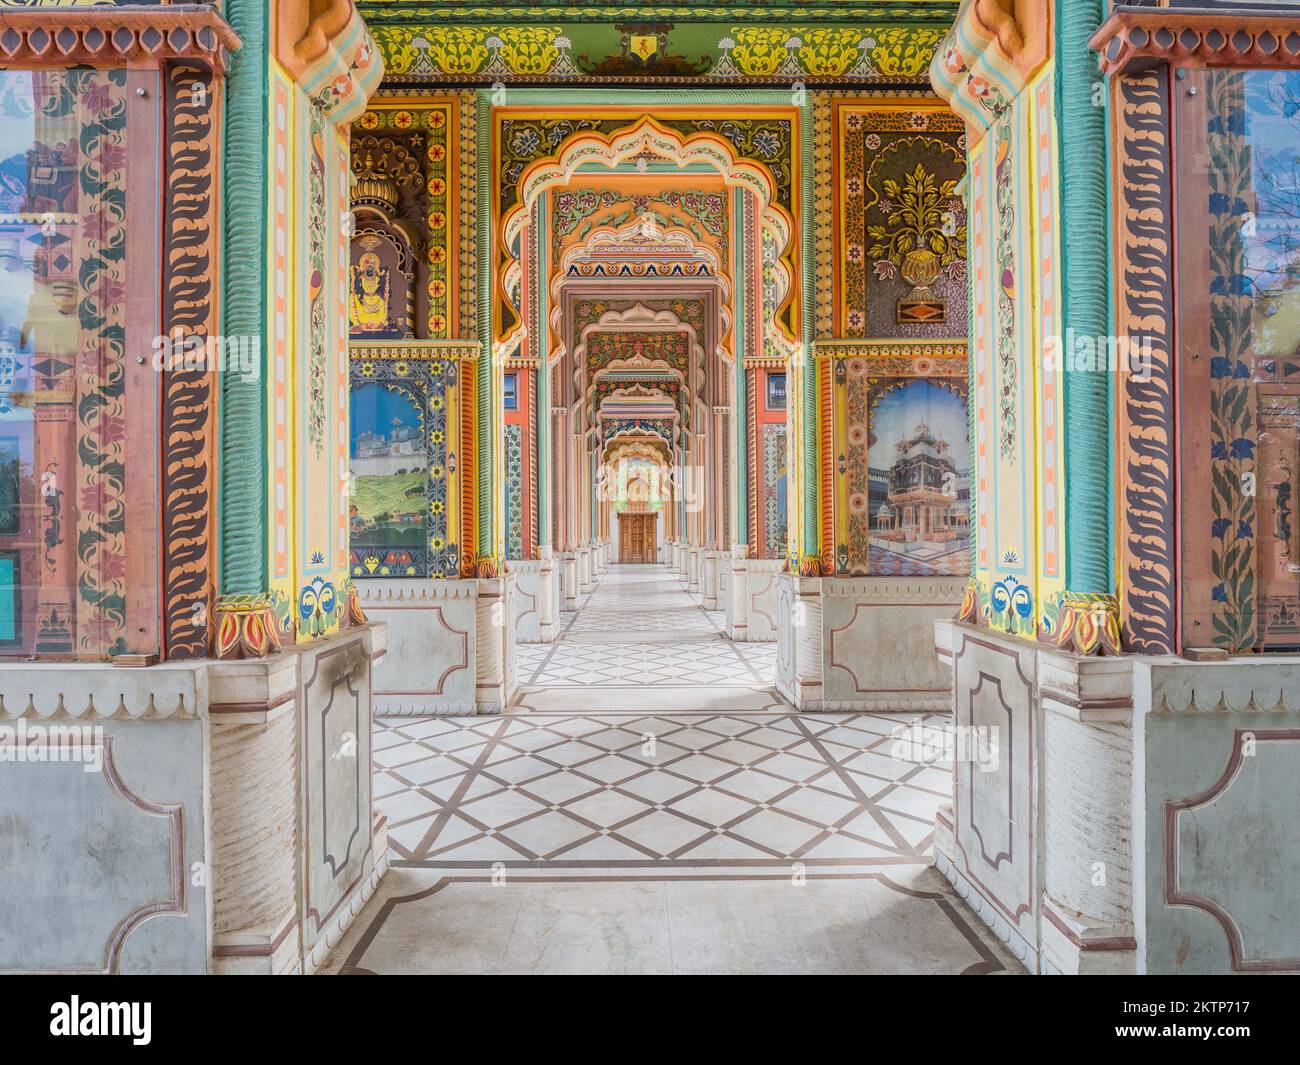 Patrika Gate à Jaipur, Rajasthan, Inde. Banque D'Images